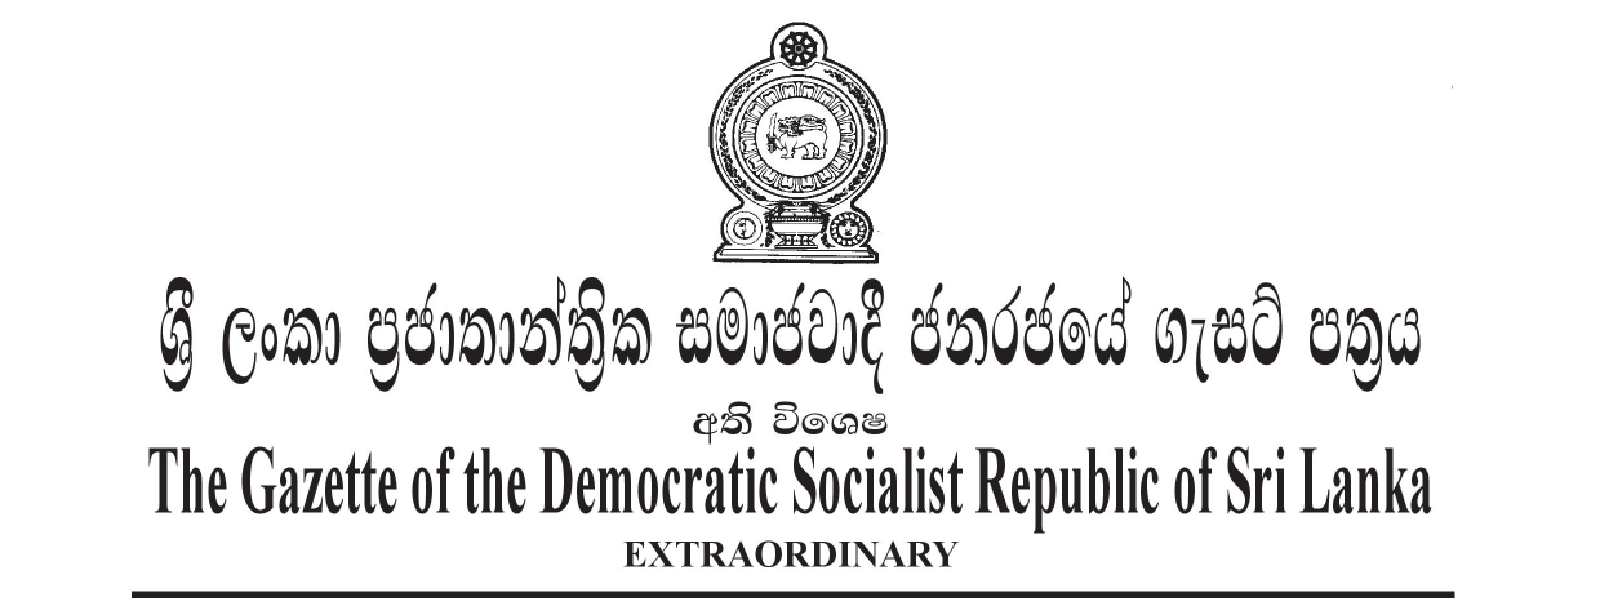 Sri Lanka declares more essential services